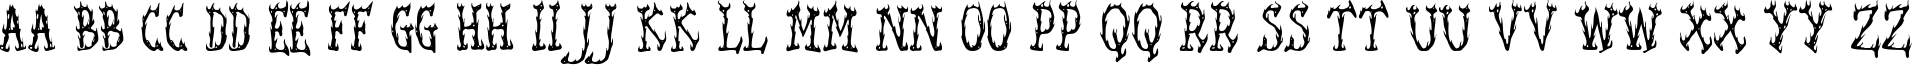 Пример написания английского алфавита шрифтом Seaweed Fire AOE